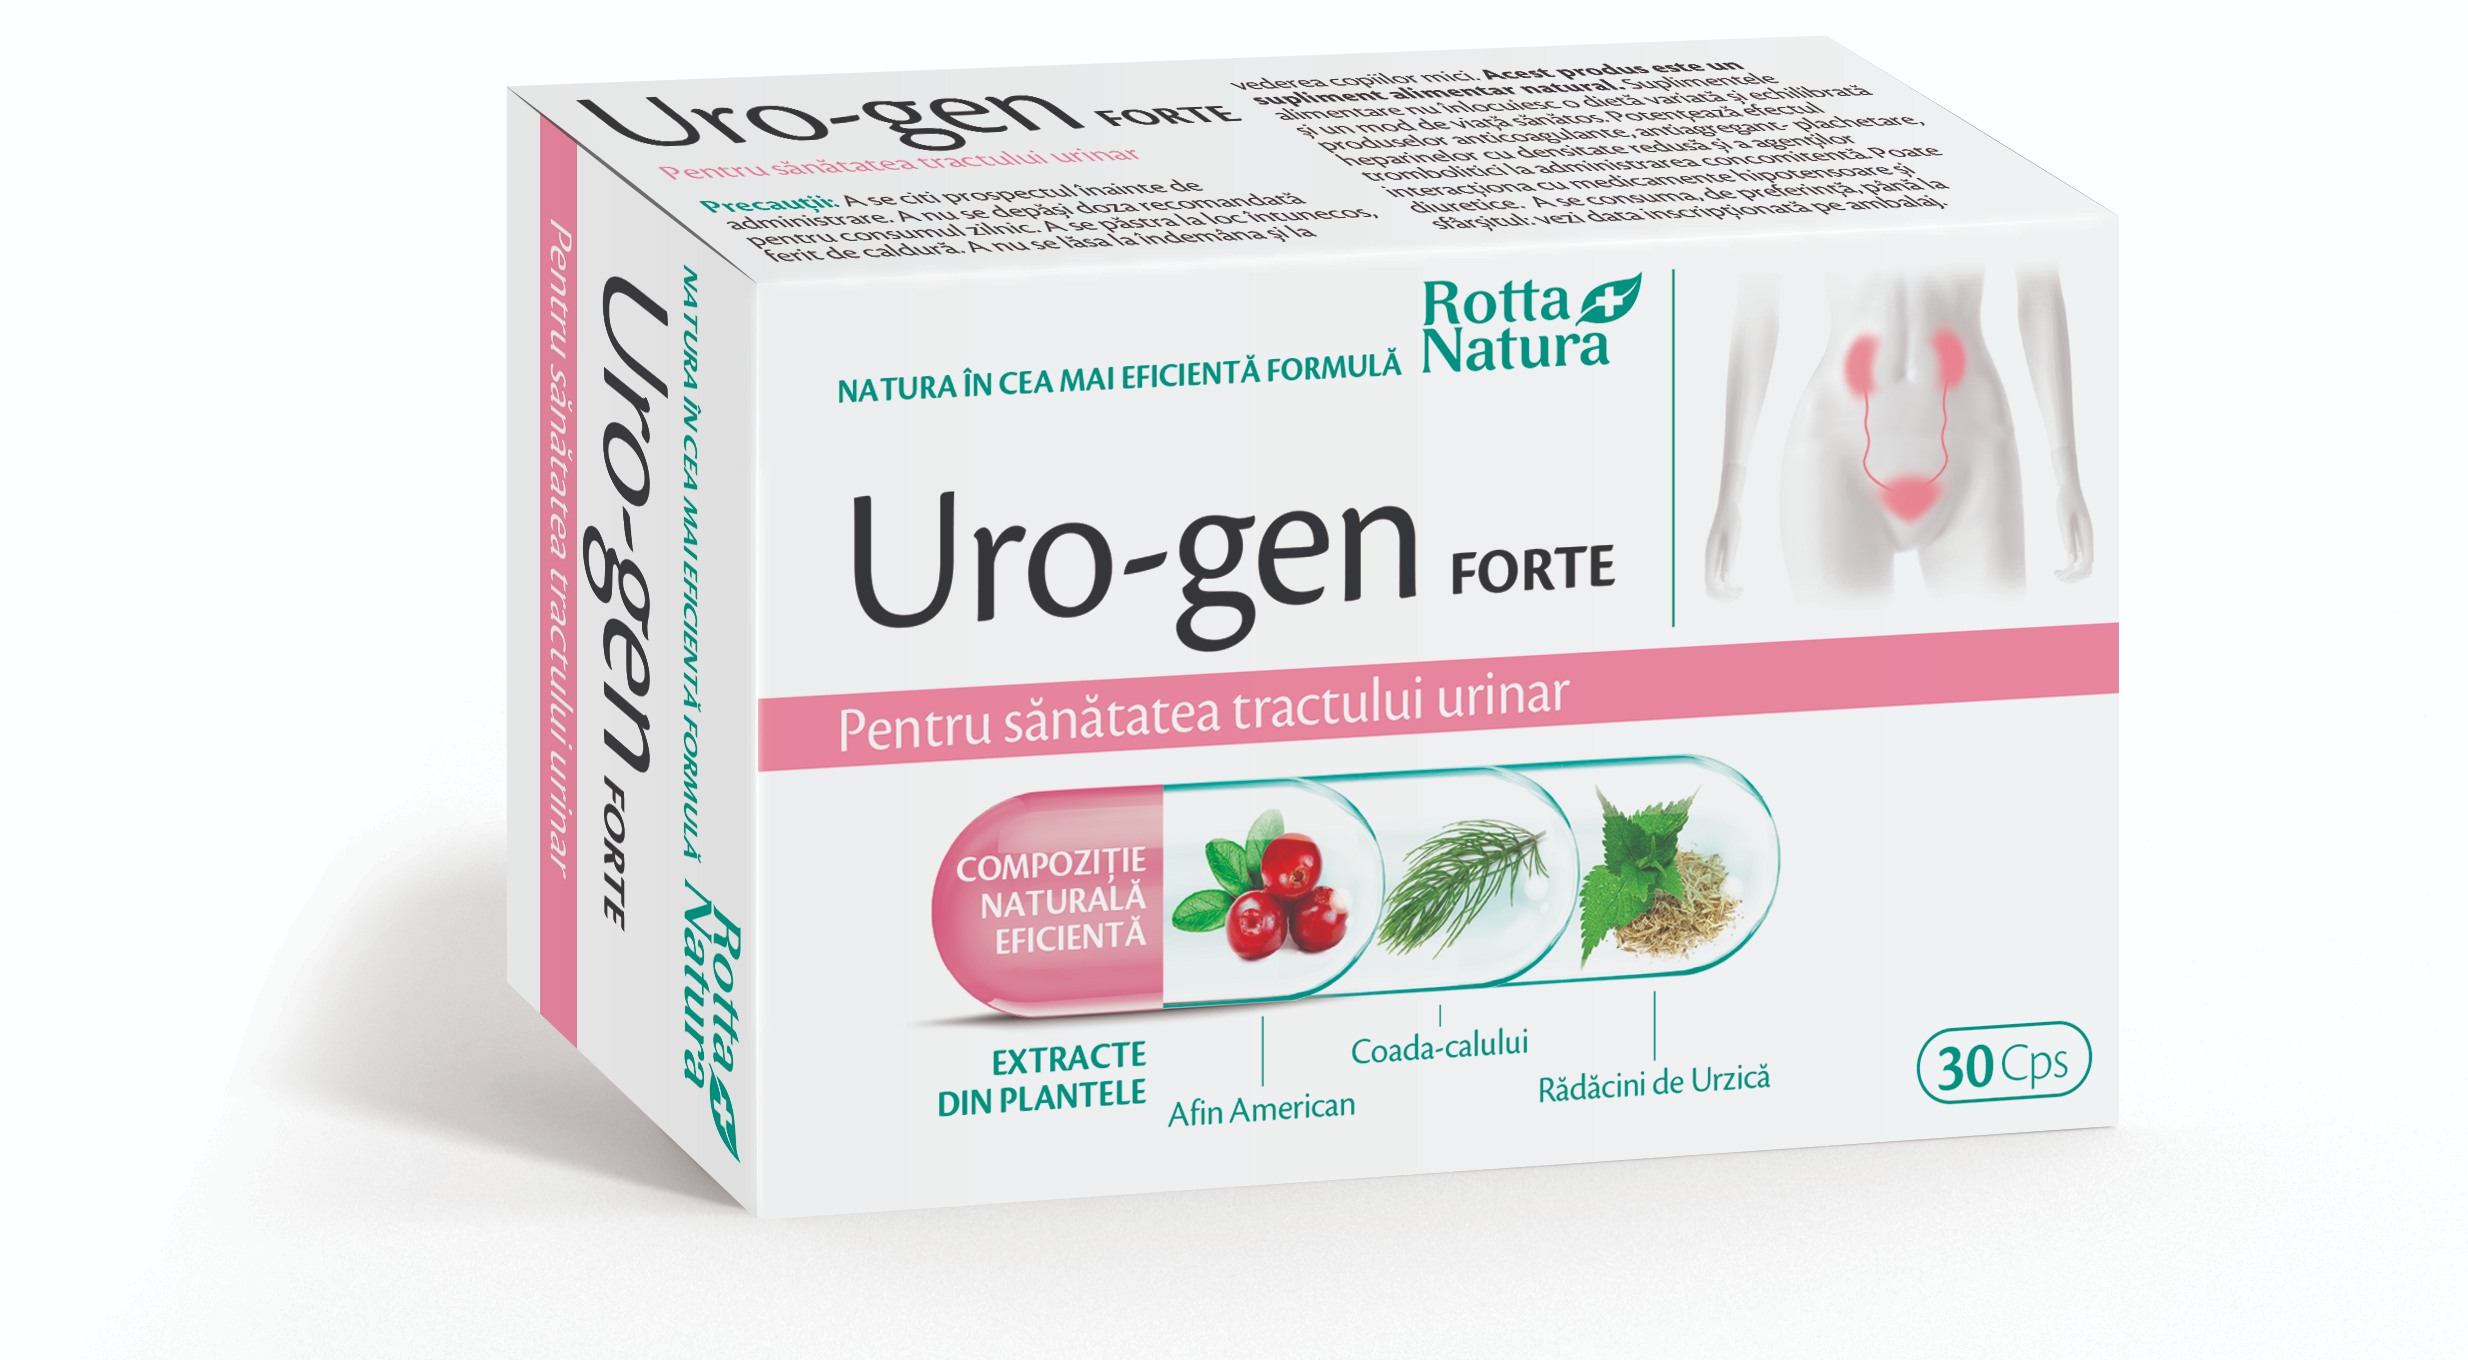 Dezinfectante urinare - Uro-gen forte, 30 capsule, Rotta Natura, sinapis.ro